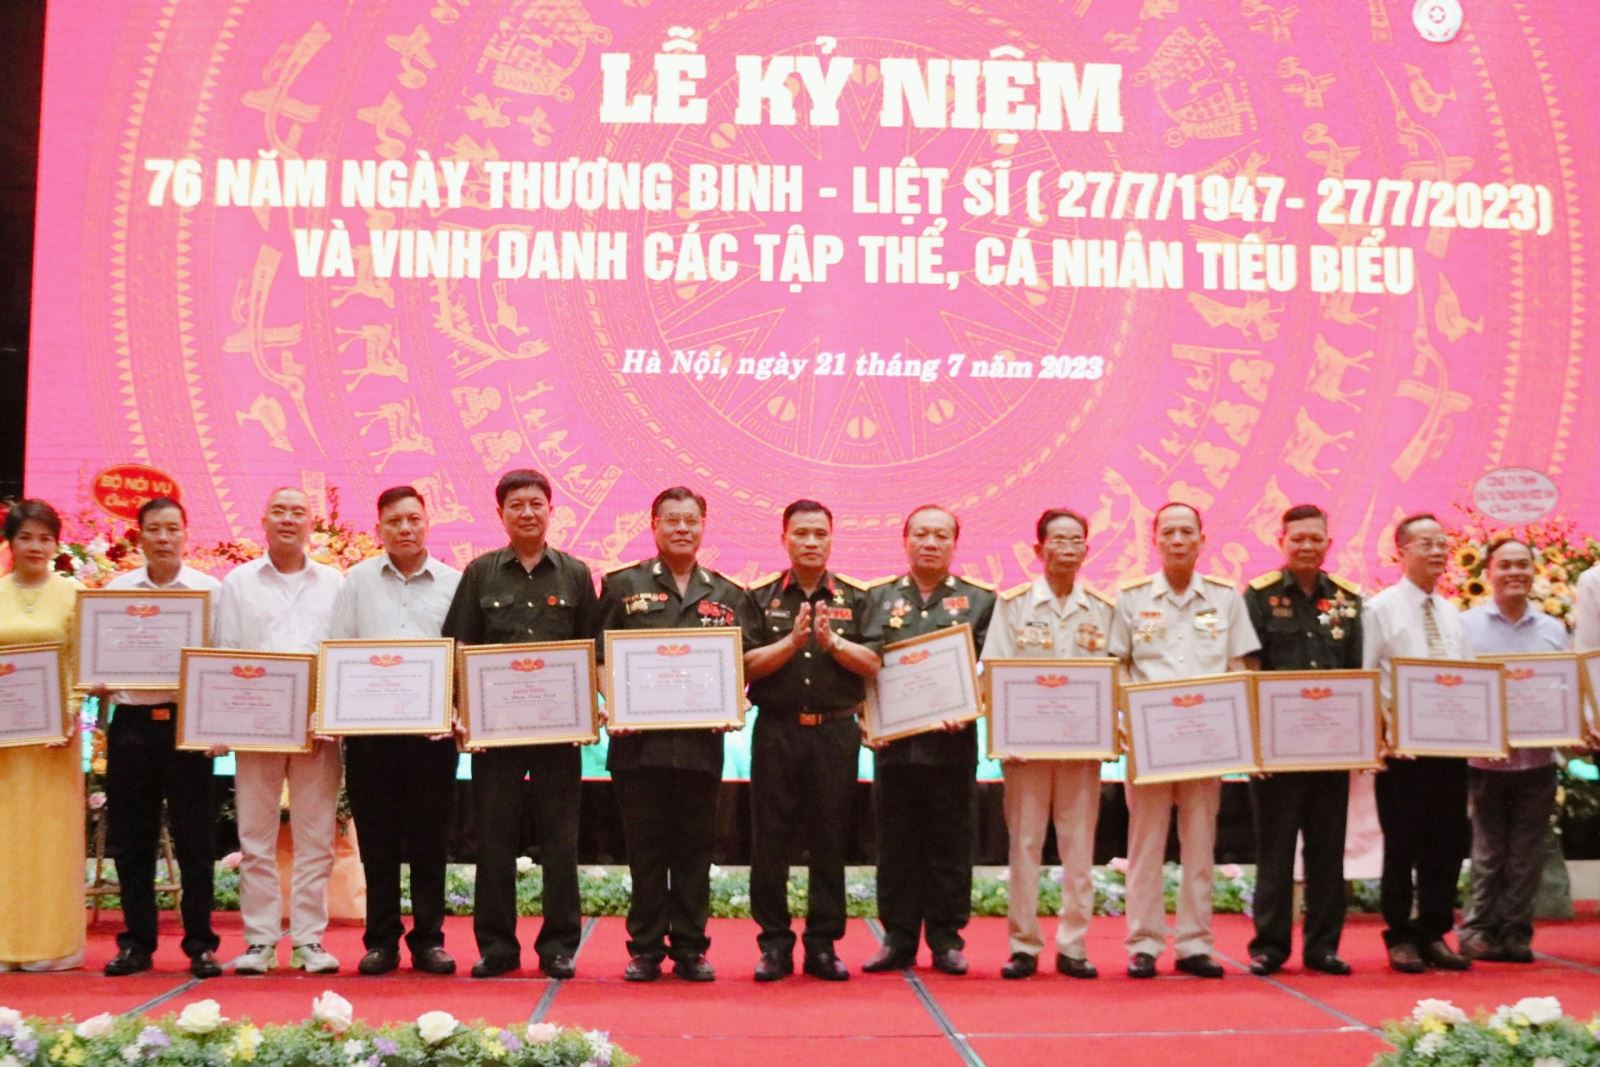 Anh hùng lao động Trần Hồng Quảng, Chủ tịch VAIDE tặng bằng khen cho các cá nhân có thành tích tiêu biểu.